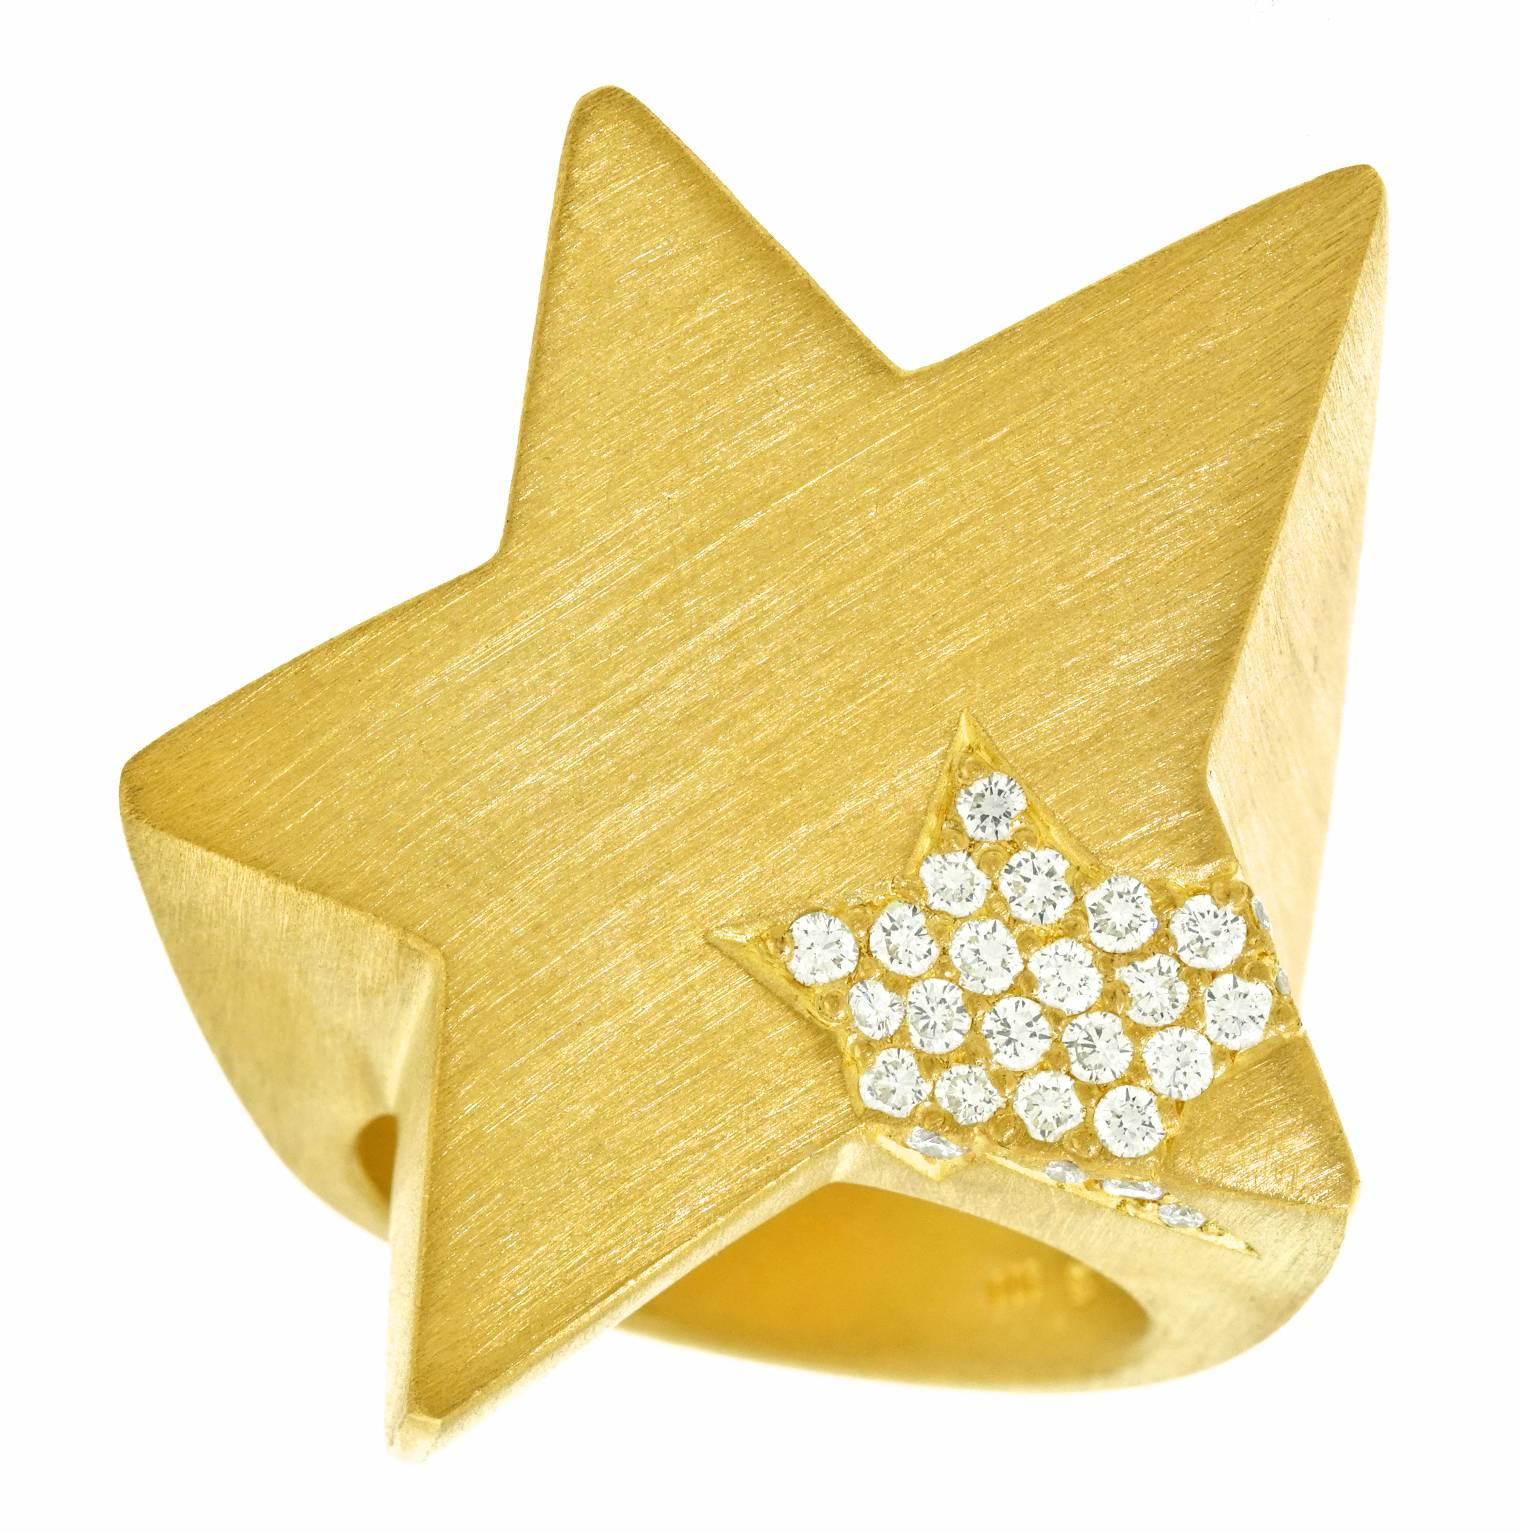 Massive 1970s Diamond-Set Gold Star Ring